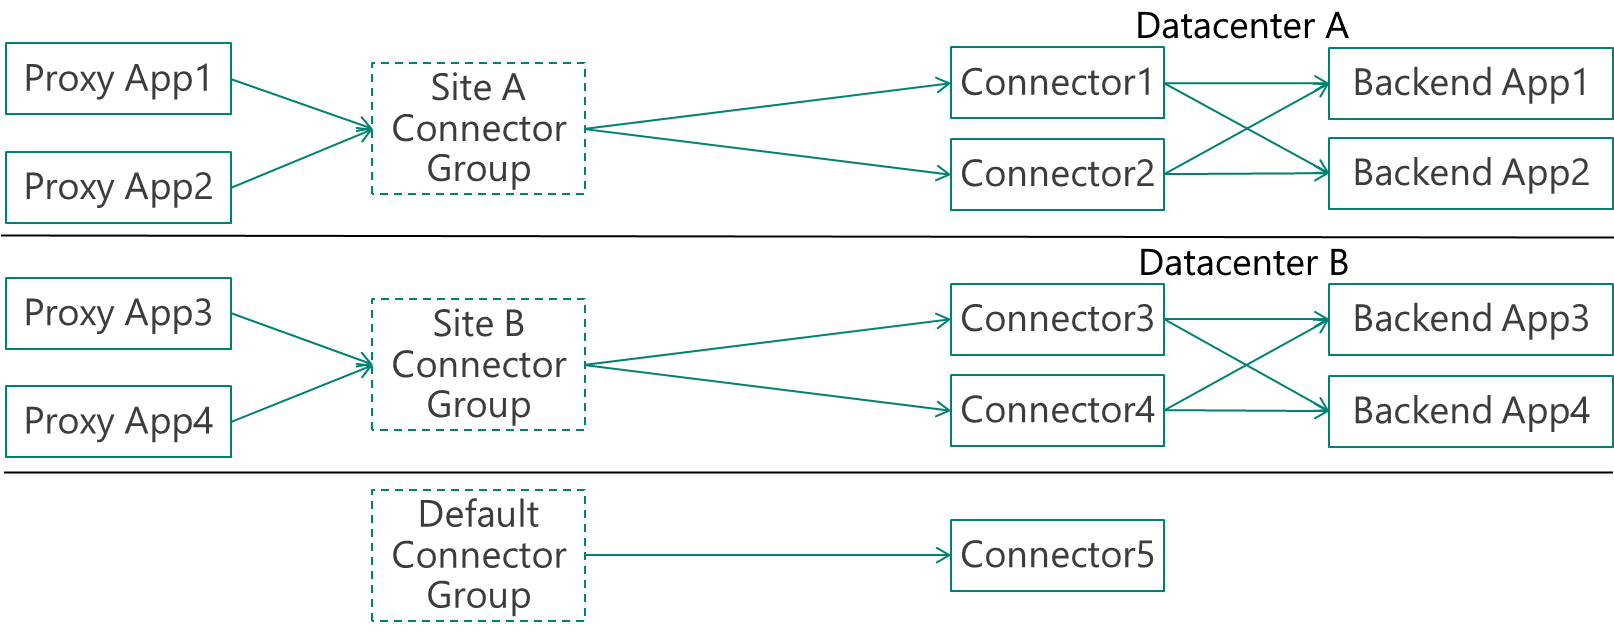 具有 2 个数据中心和 2 个连接器的公司示例